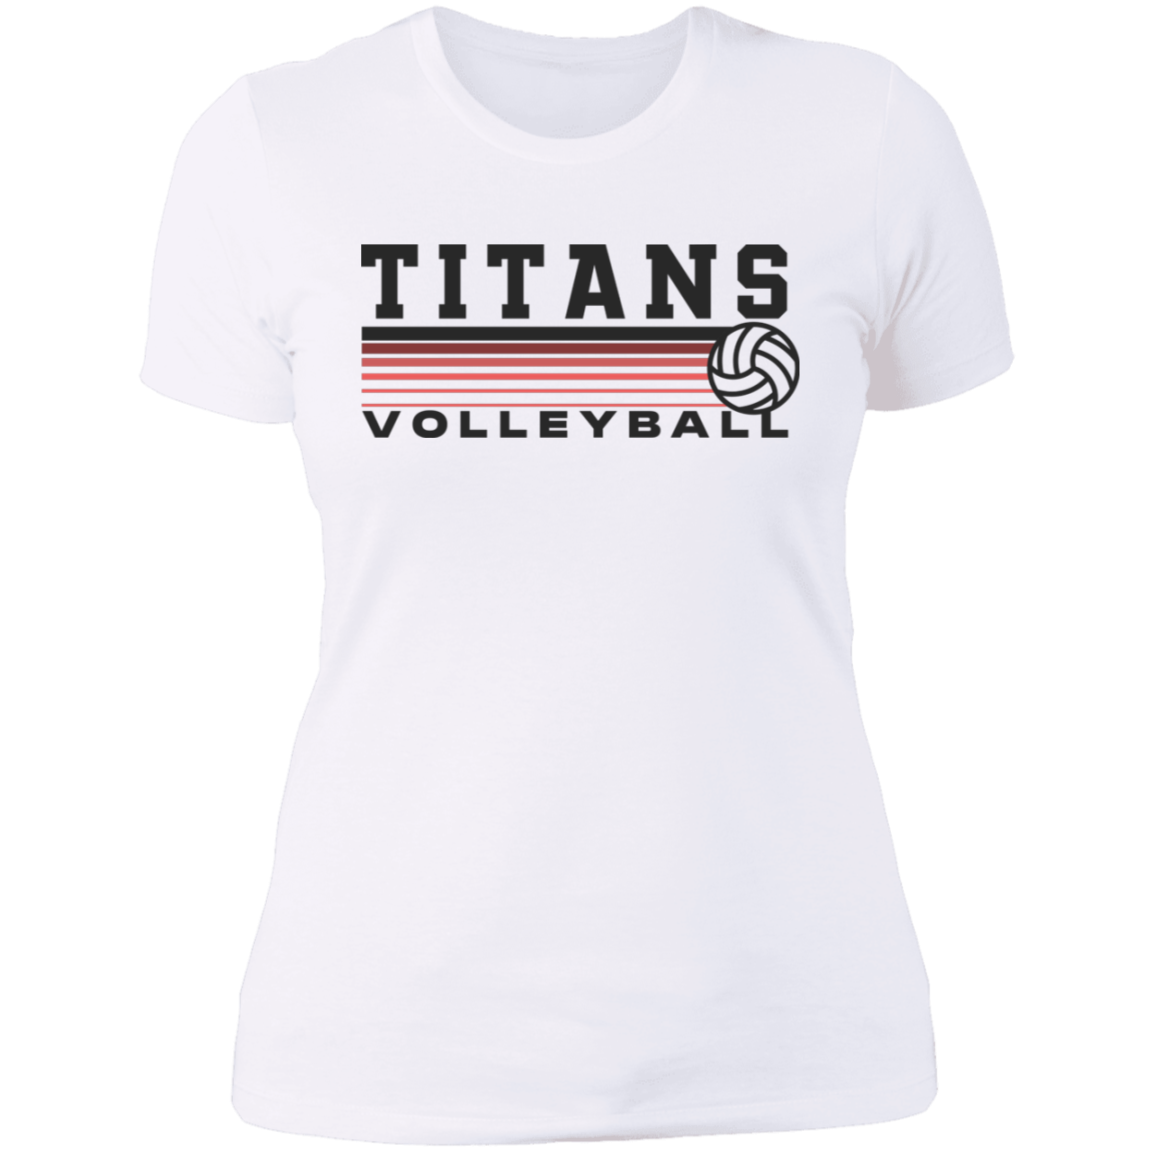 TITANS Volleyball Ladies' Boyfriend T-Shirt